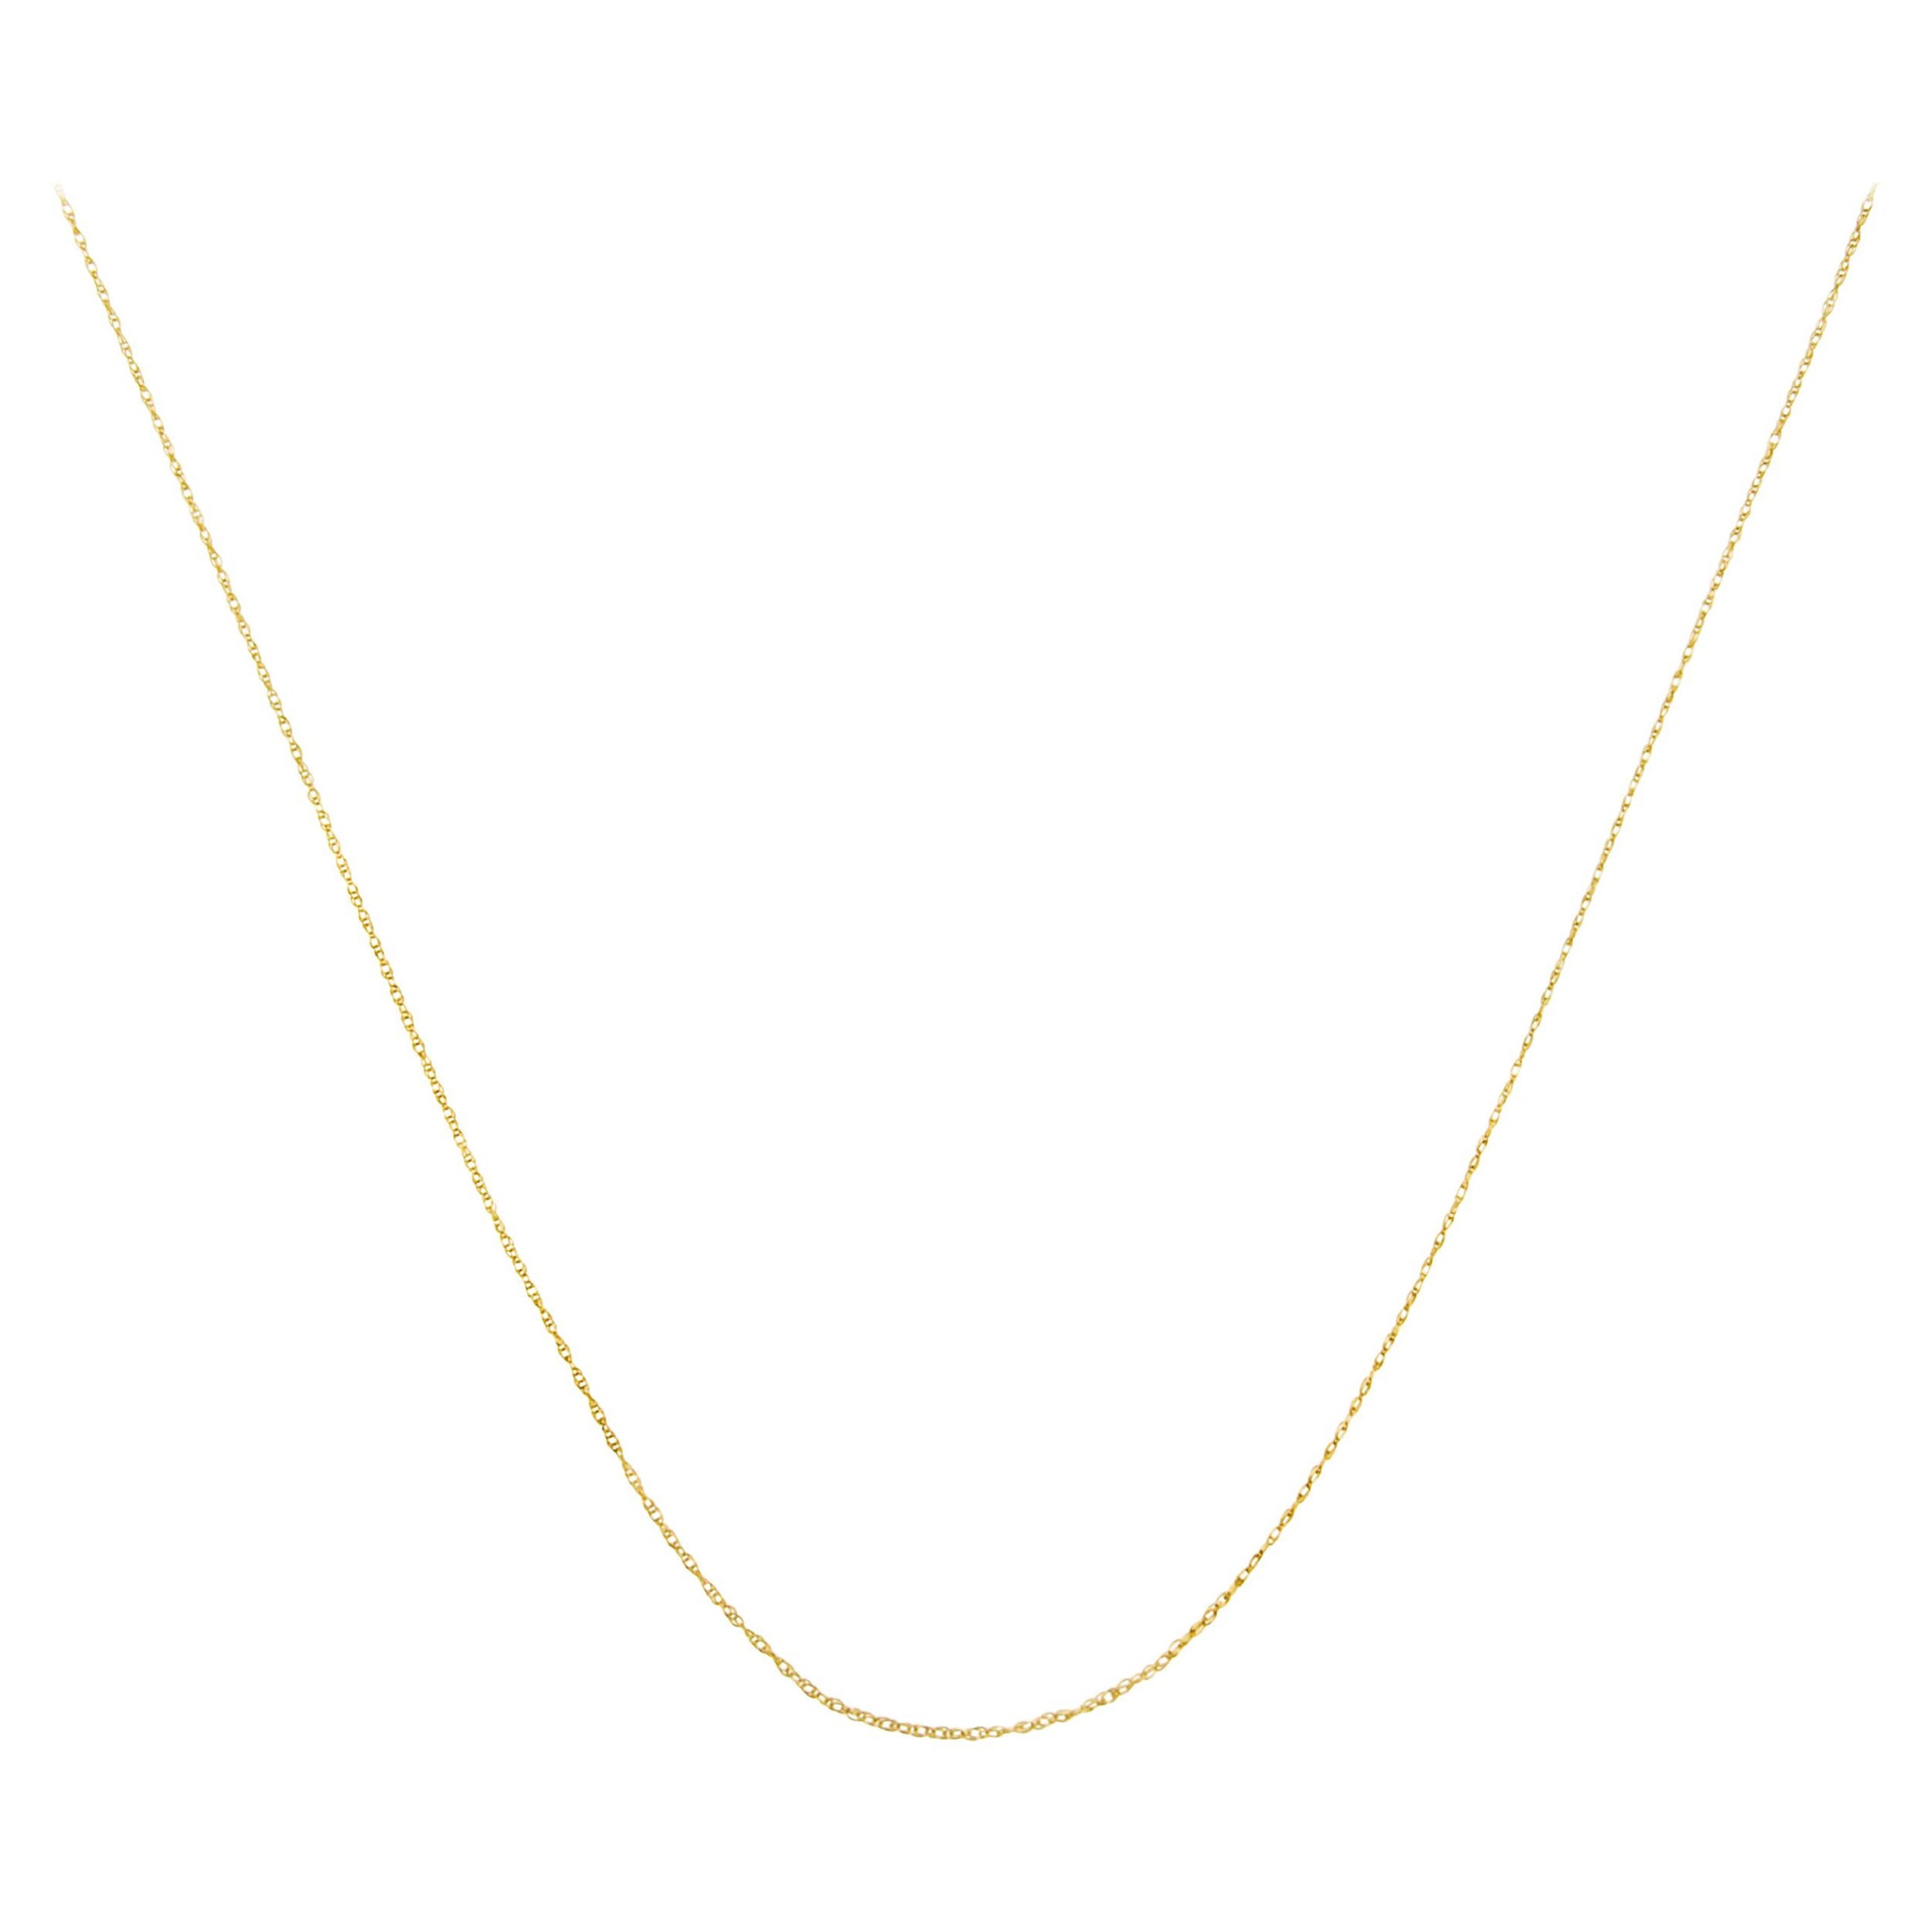 Halskette, Unisex, massives 10K Gelbgold, schlank und reichlich Seil, Seil